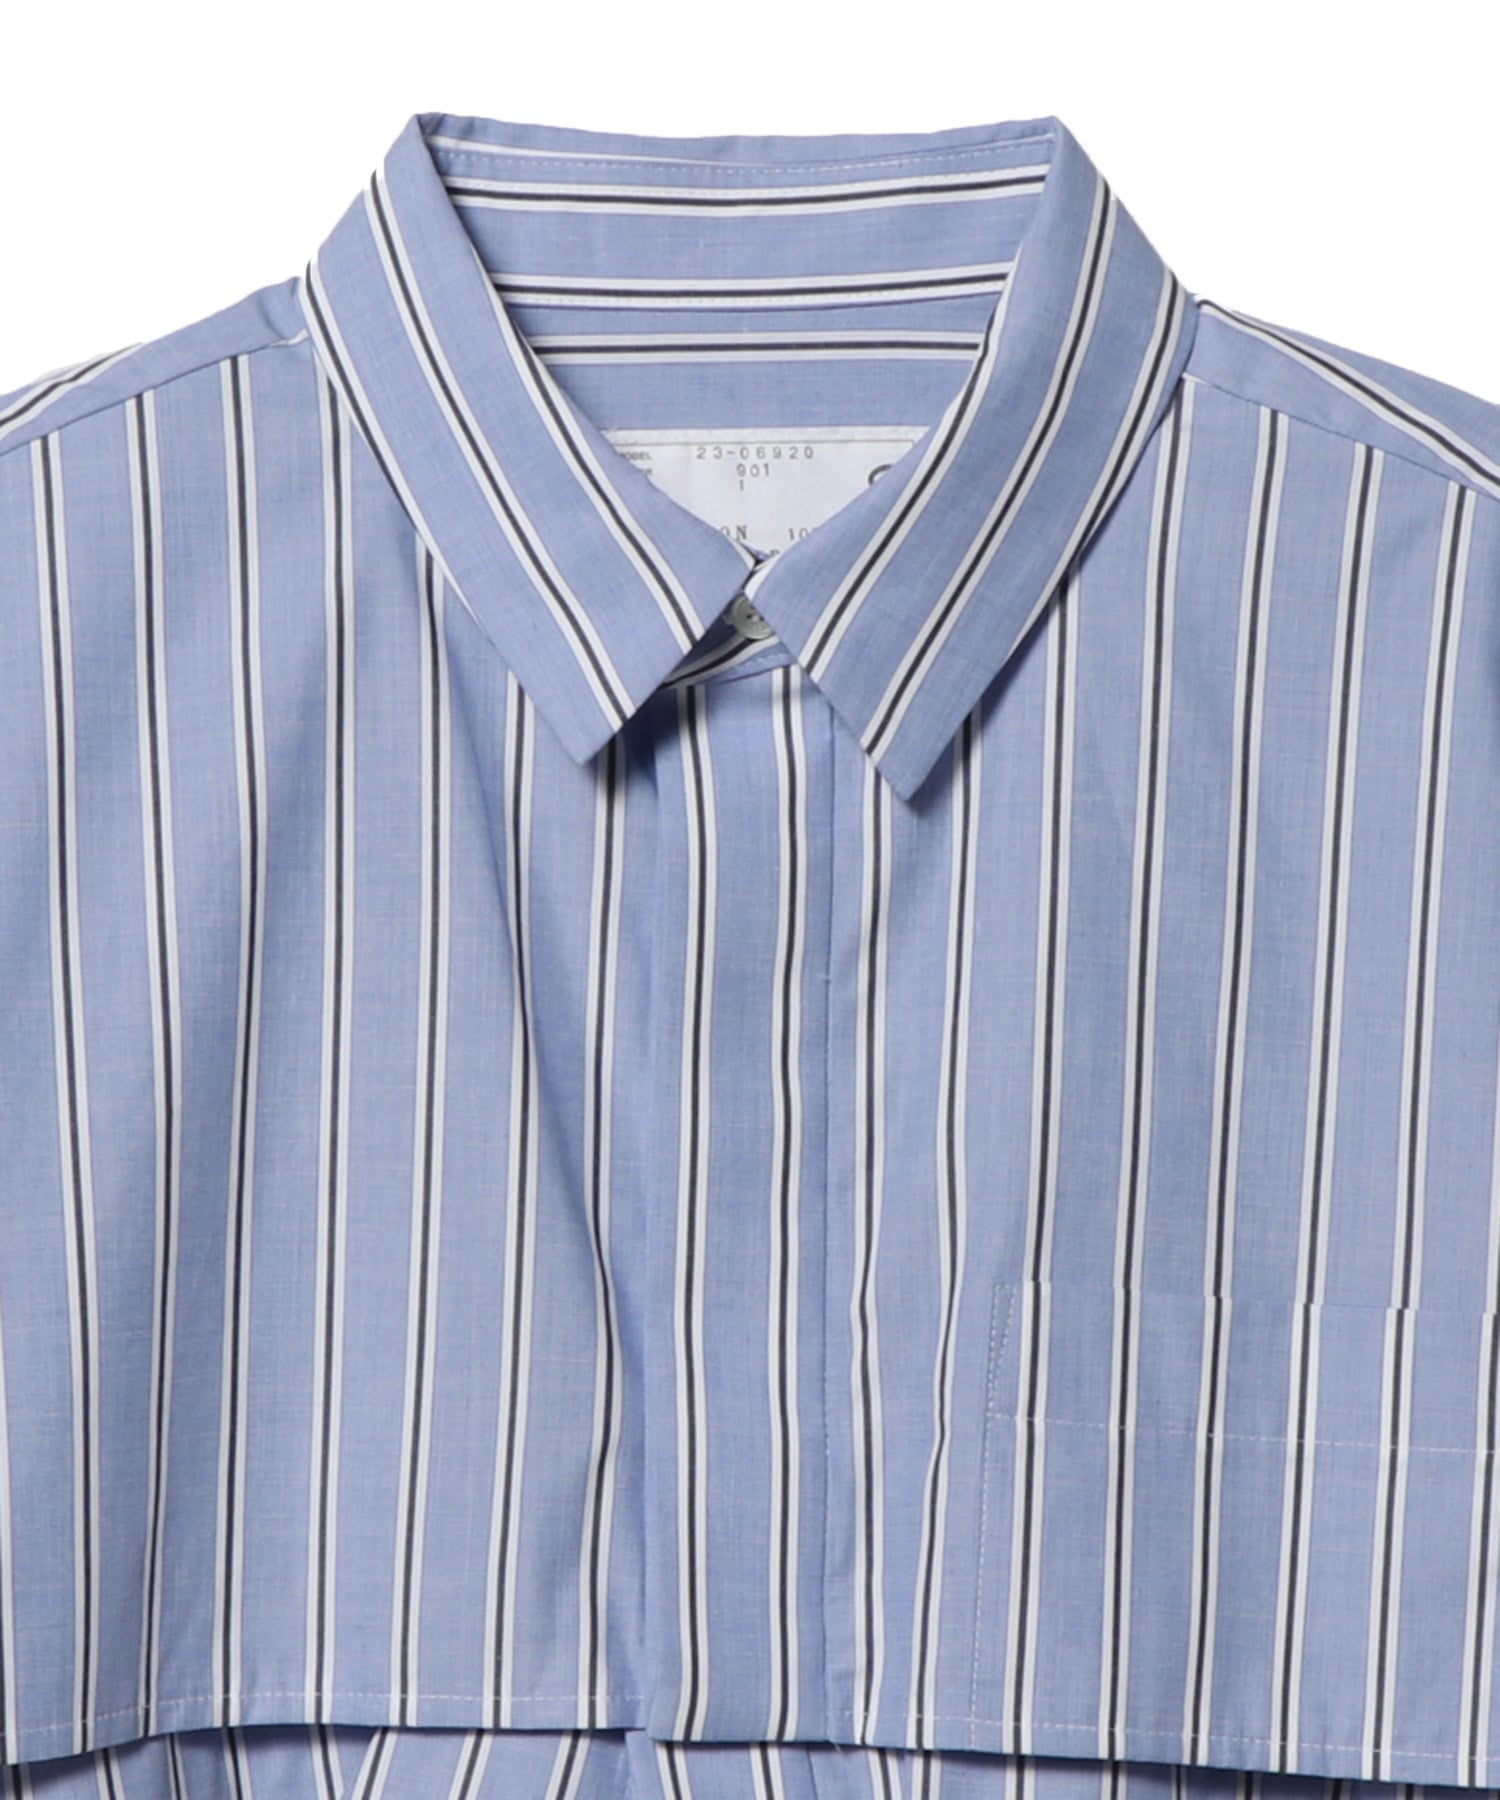 約56cm着丈サカイ コットンポプリンプルオーバーシャツ Tシャツ カットソー 半袖 2 紺